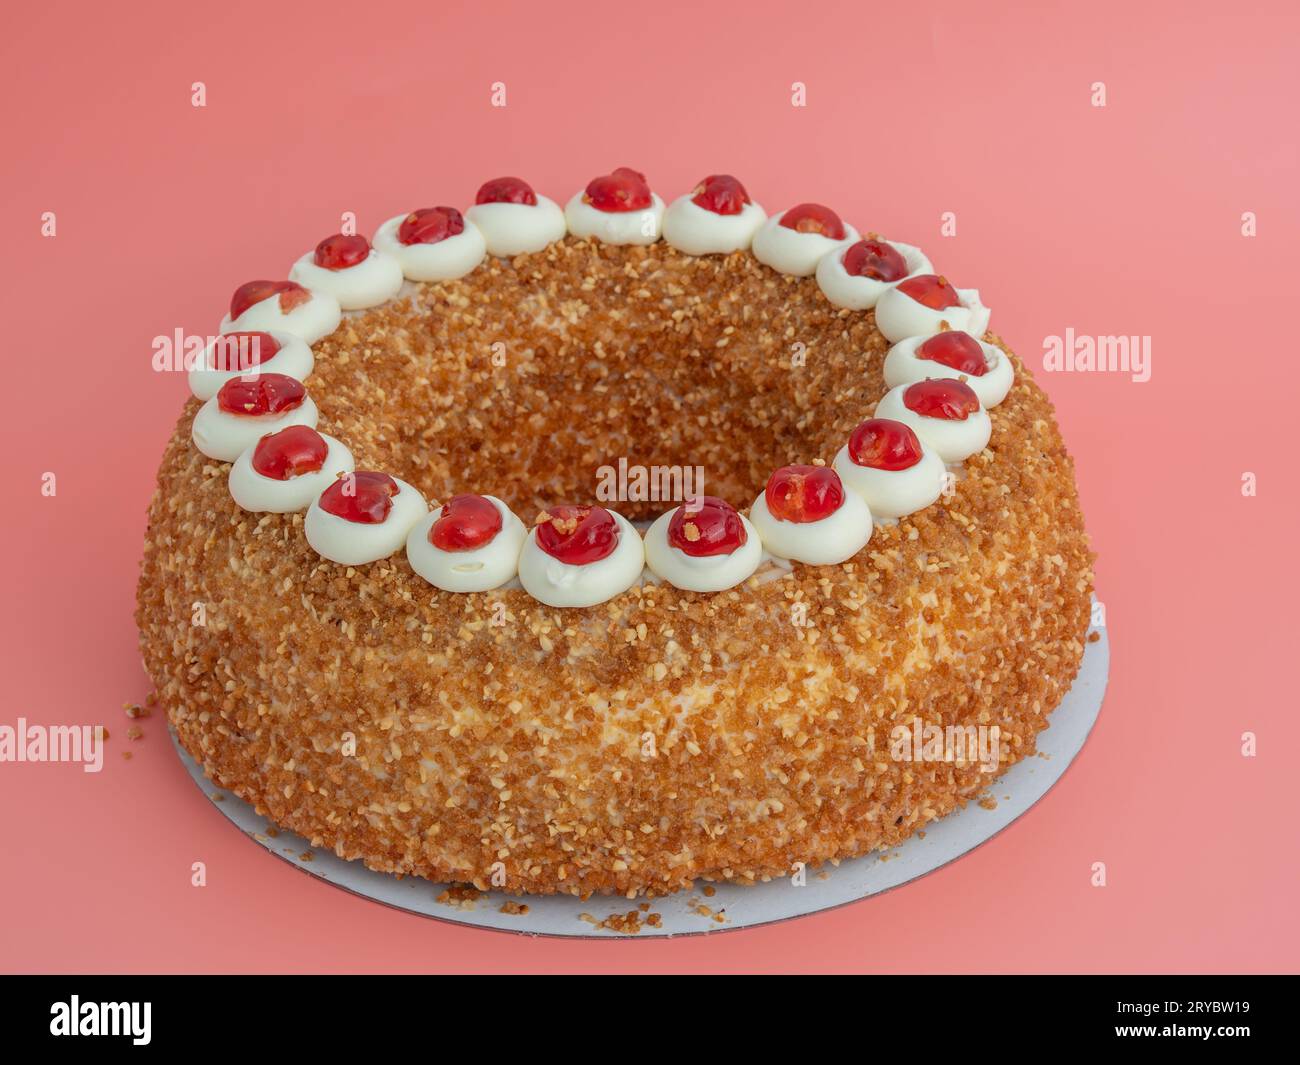 Frankfurter Kranz Cake, également connu simplement sous le nom de Kranz en Allemagne, est un dessert allemand classique et apprécié. Gâteau sur fond rose. Banque D'Images